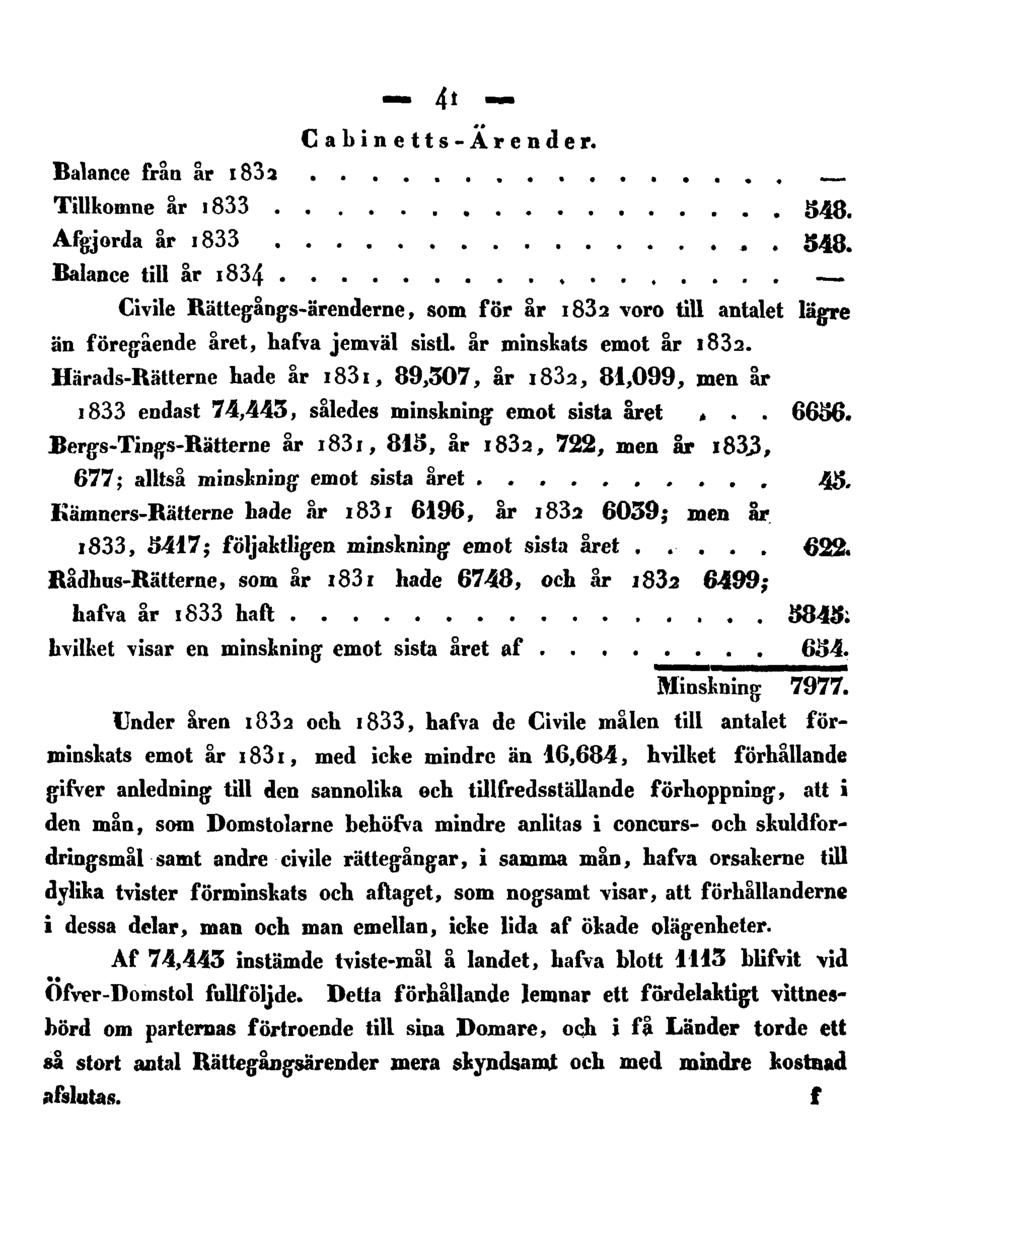 41 Cabinetts-Ärender. Balance från år 1832 Tillkomne år 1833 548. Afgjorda år 1833 548.